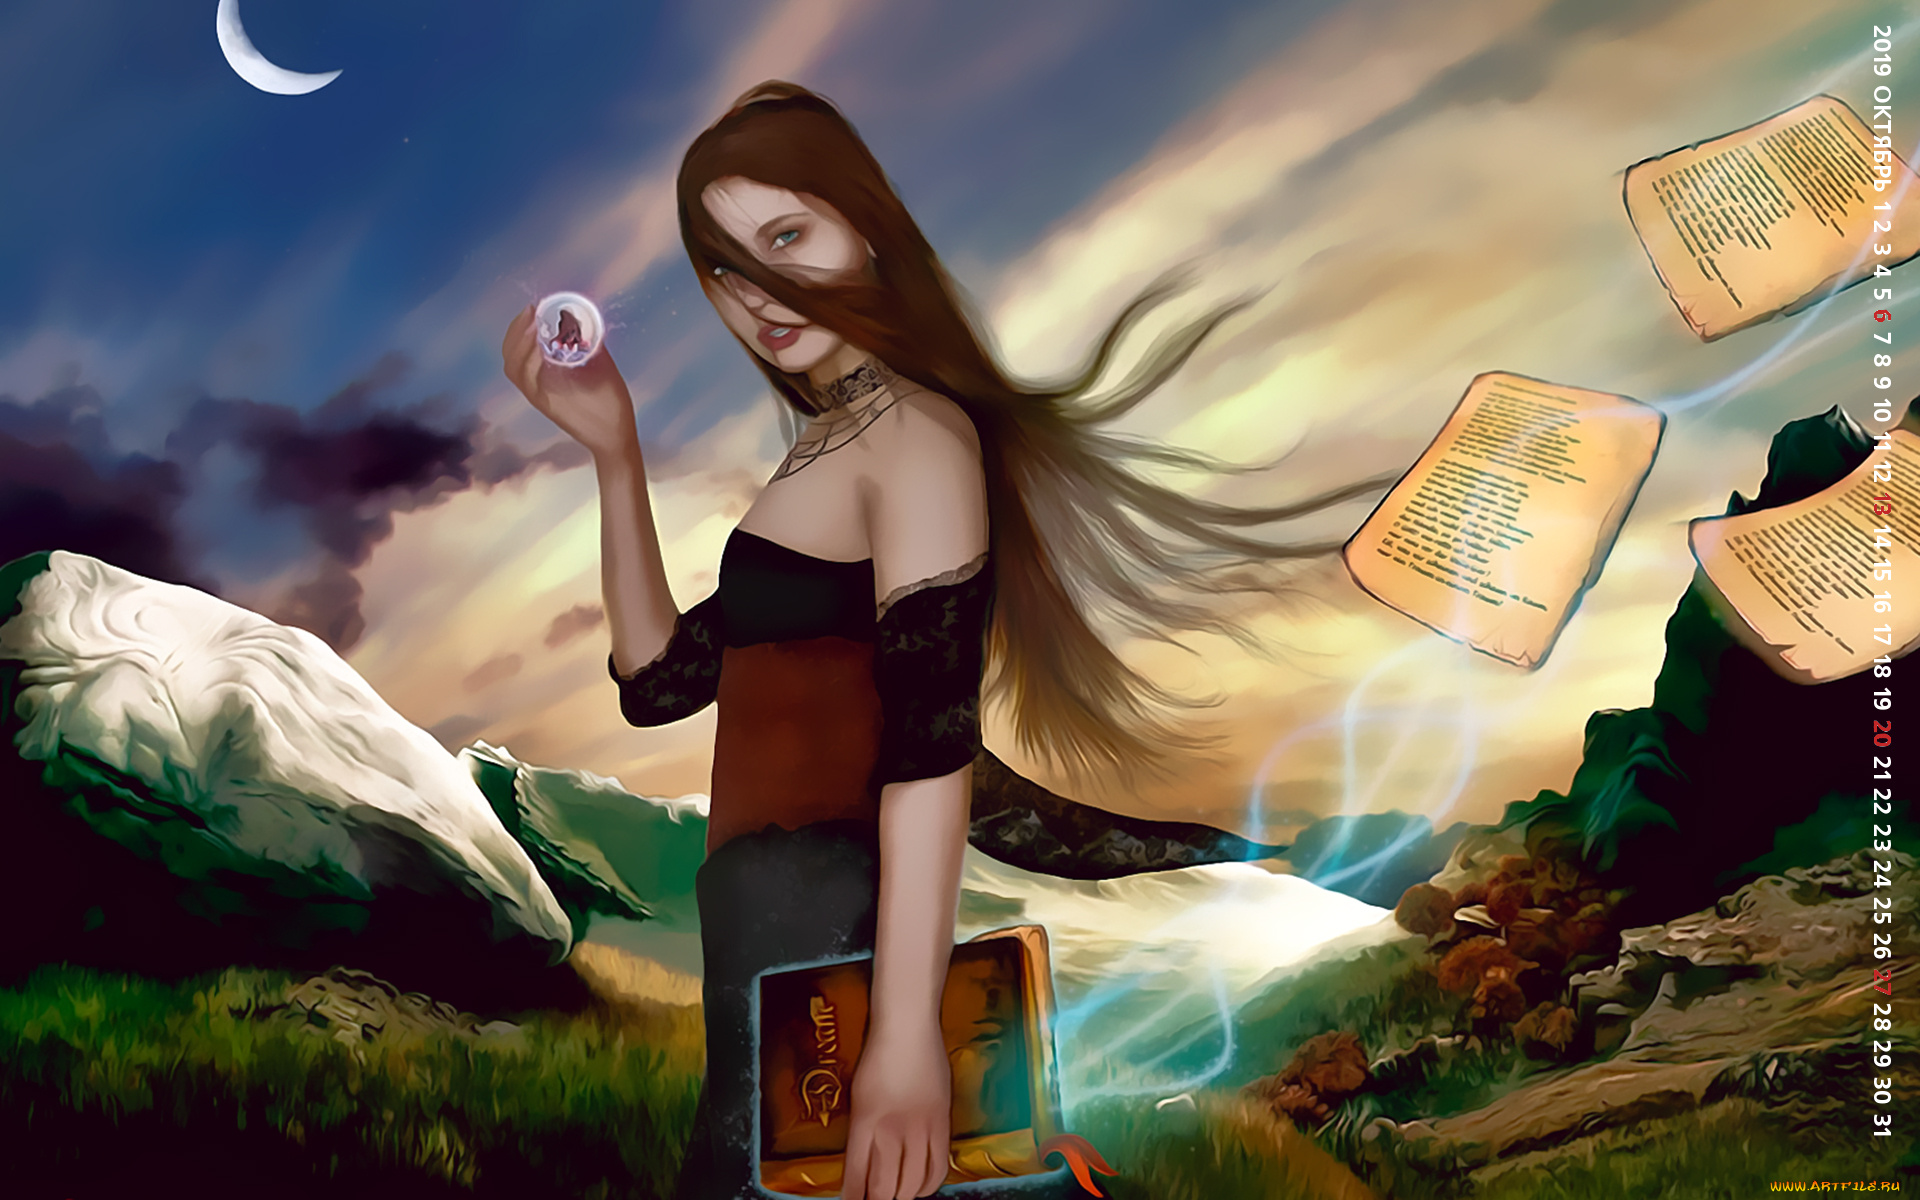 Было просто волшебно. Девушка с книгой арт. Девушка с книгой фэнтези. Красивая ведьма. Сновидения фэнтези.